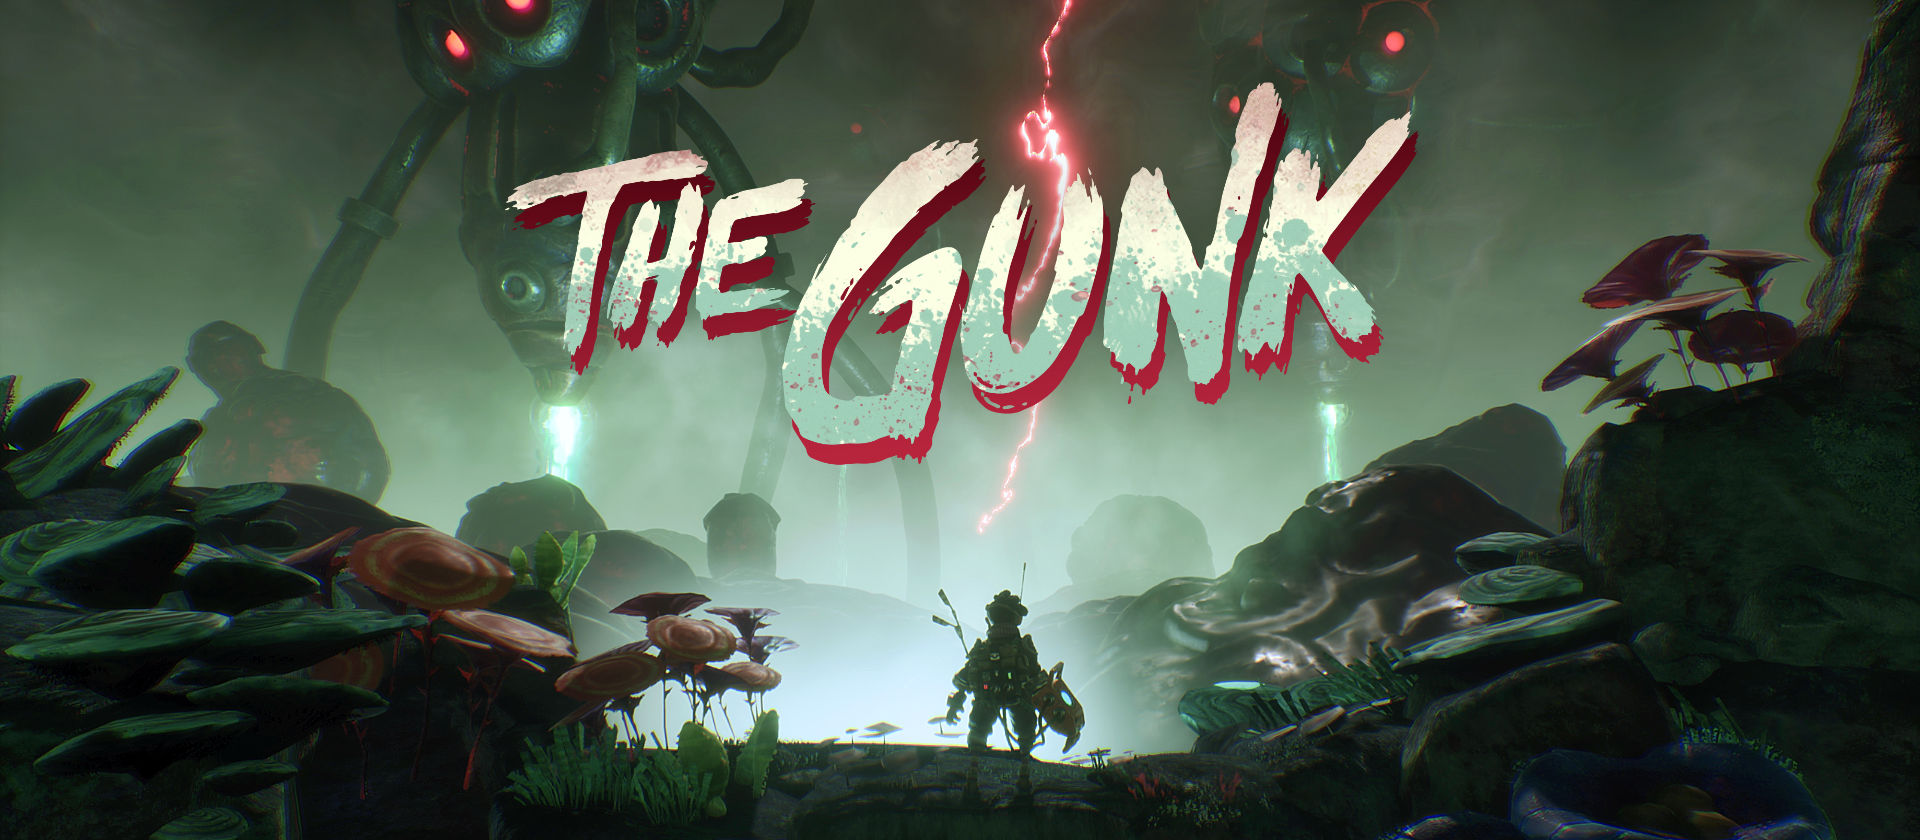 the gunk gameplay